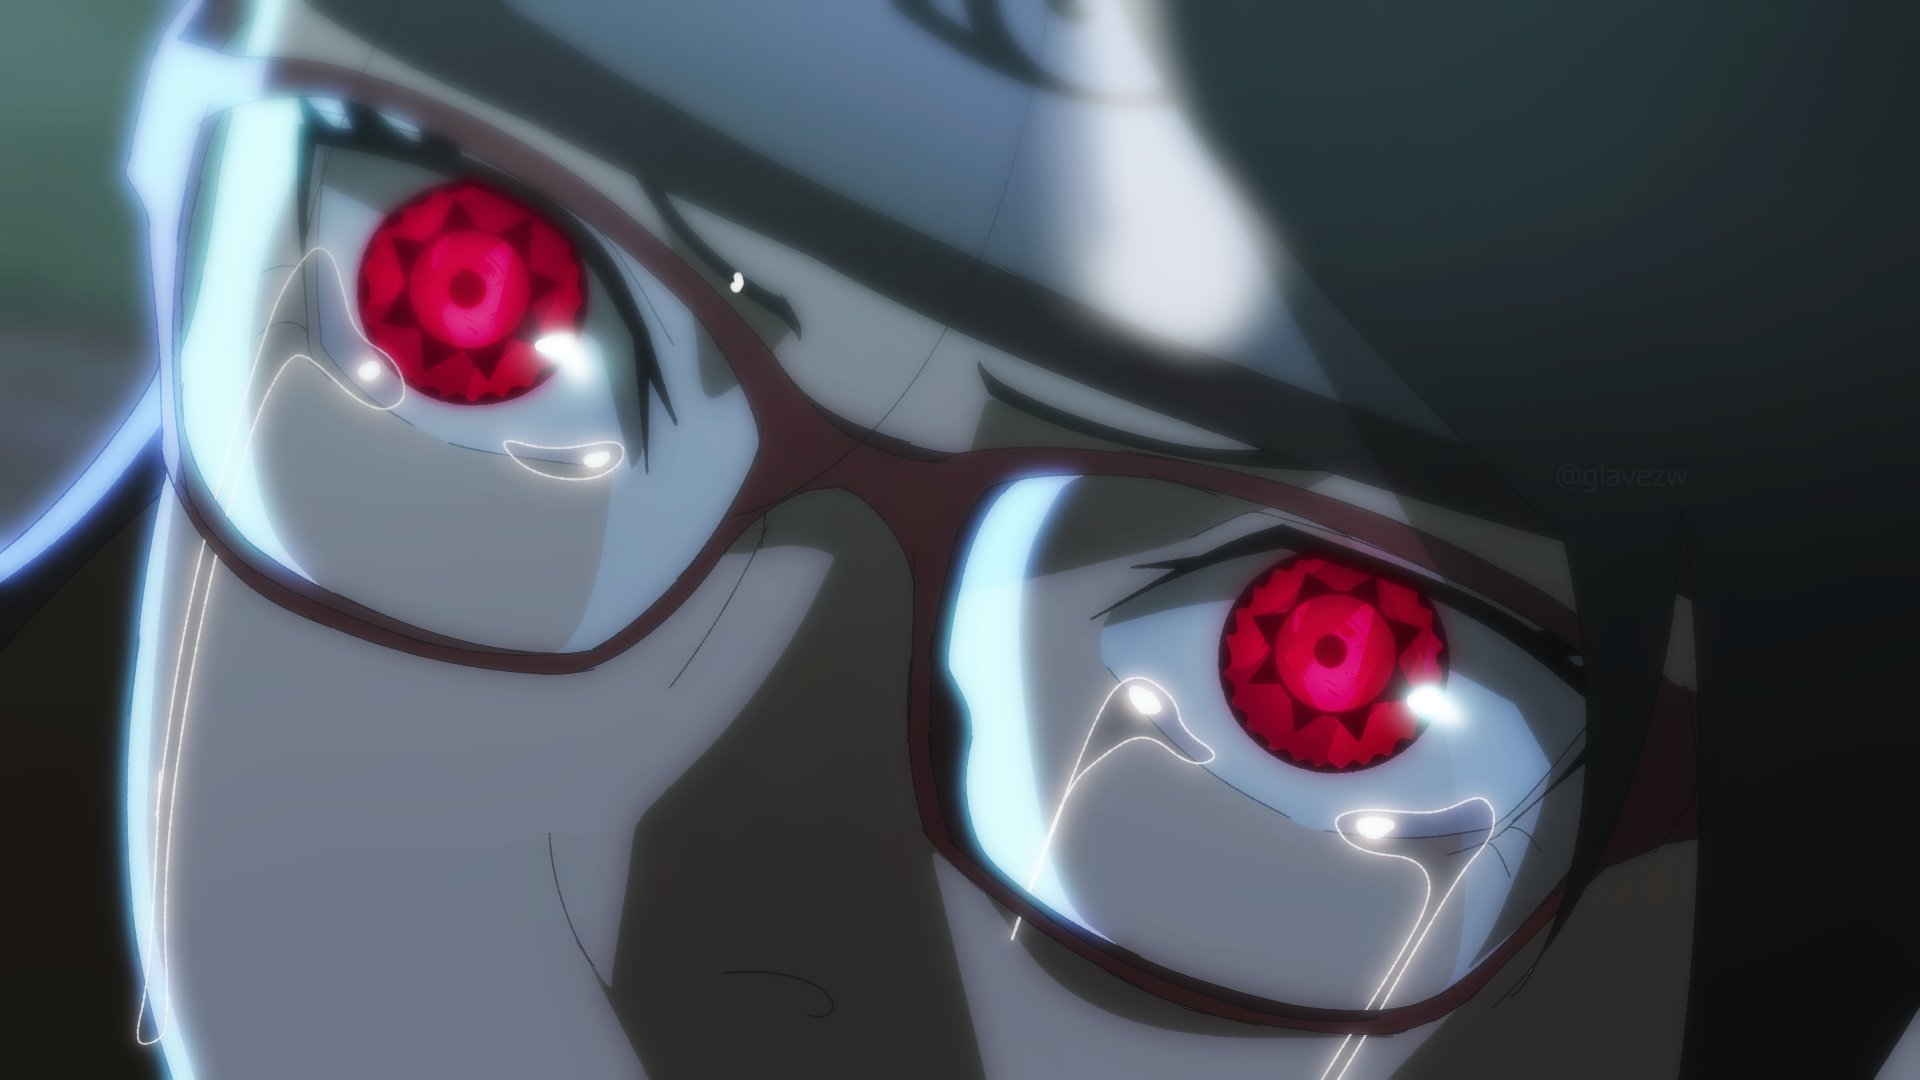 Legado de Konoha on X: Para despertar o Sharingan é preciso uma emoção  muito forte, no caso de Sarada Uchiha, o motivo foi a expectativa de rever  seu pai, Sasuke, depois de